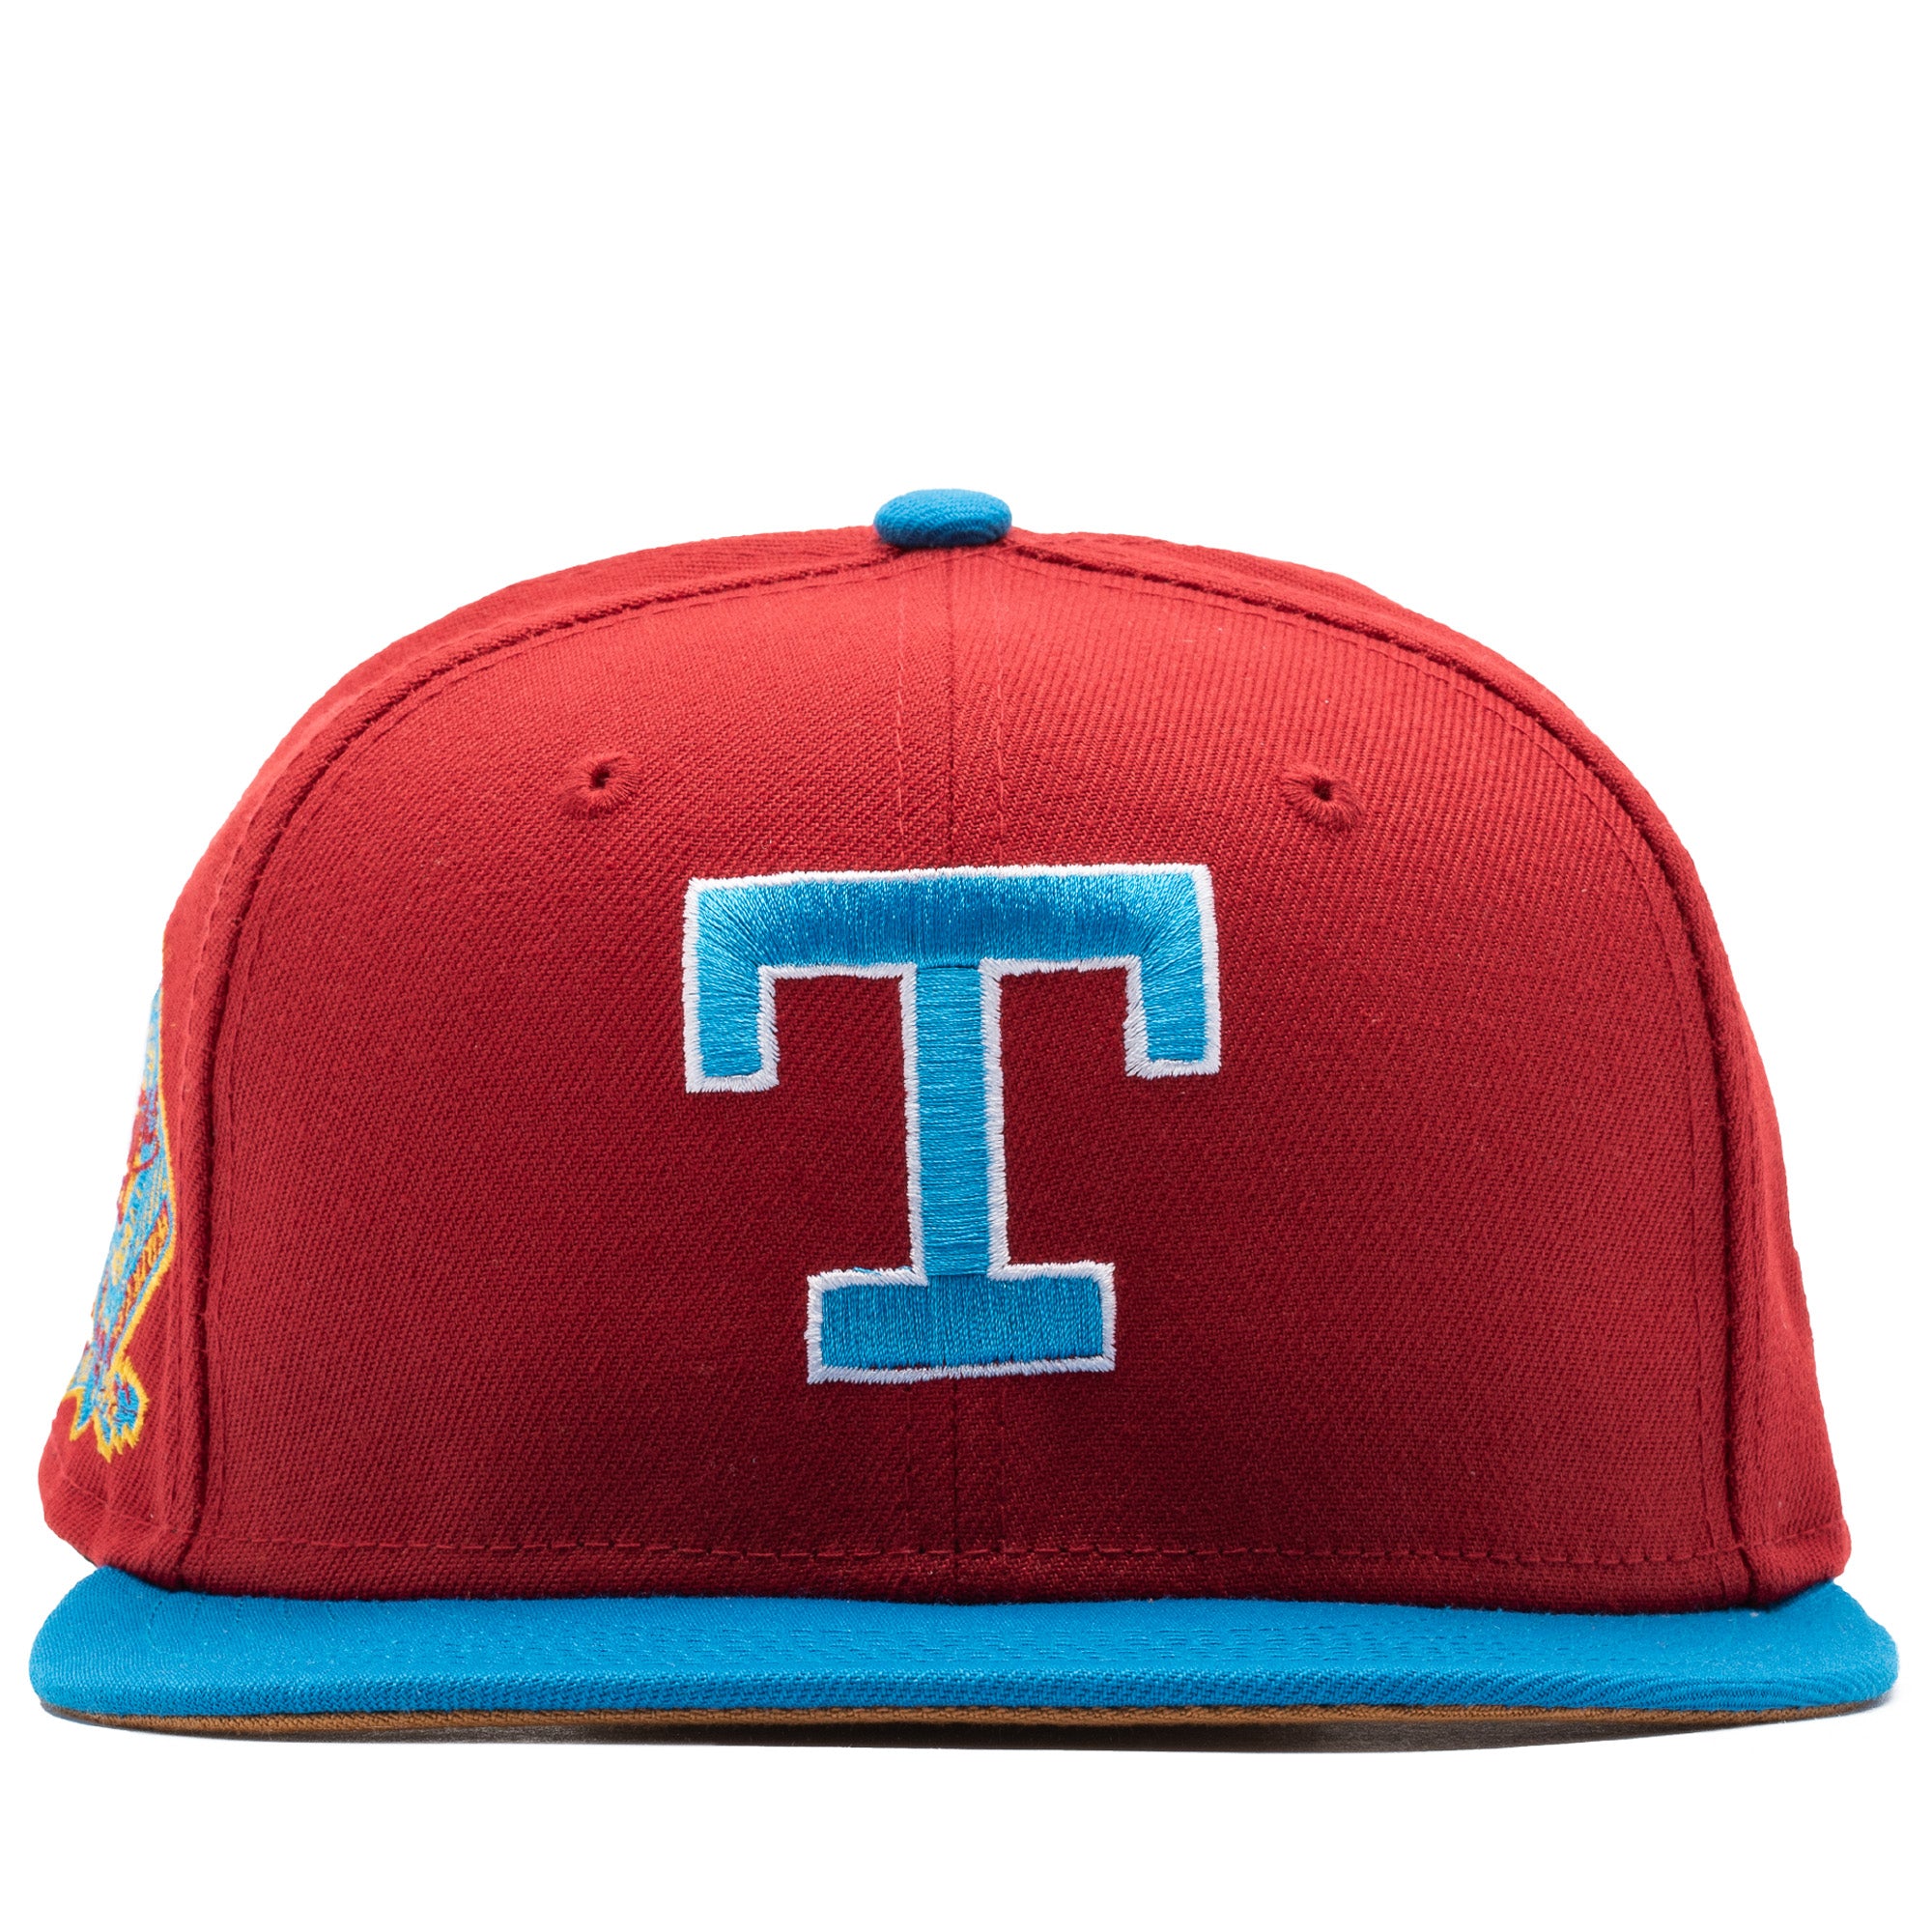 new era hats texas rangers